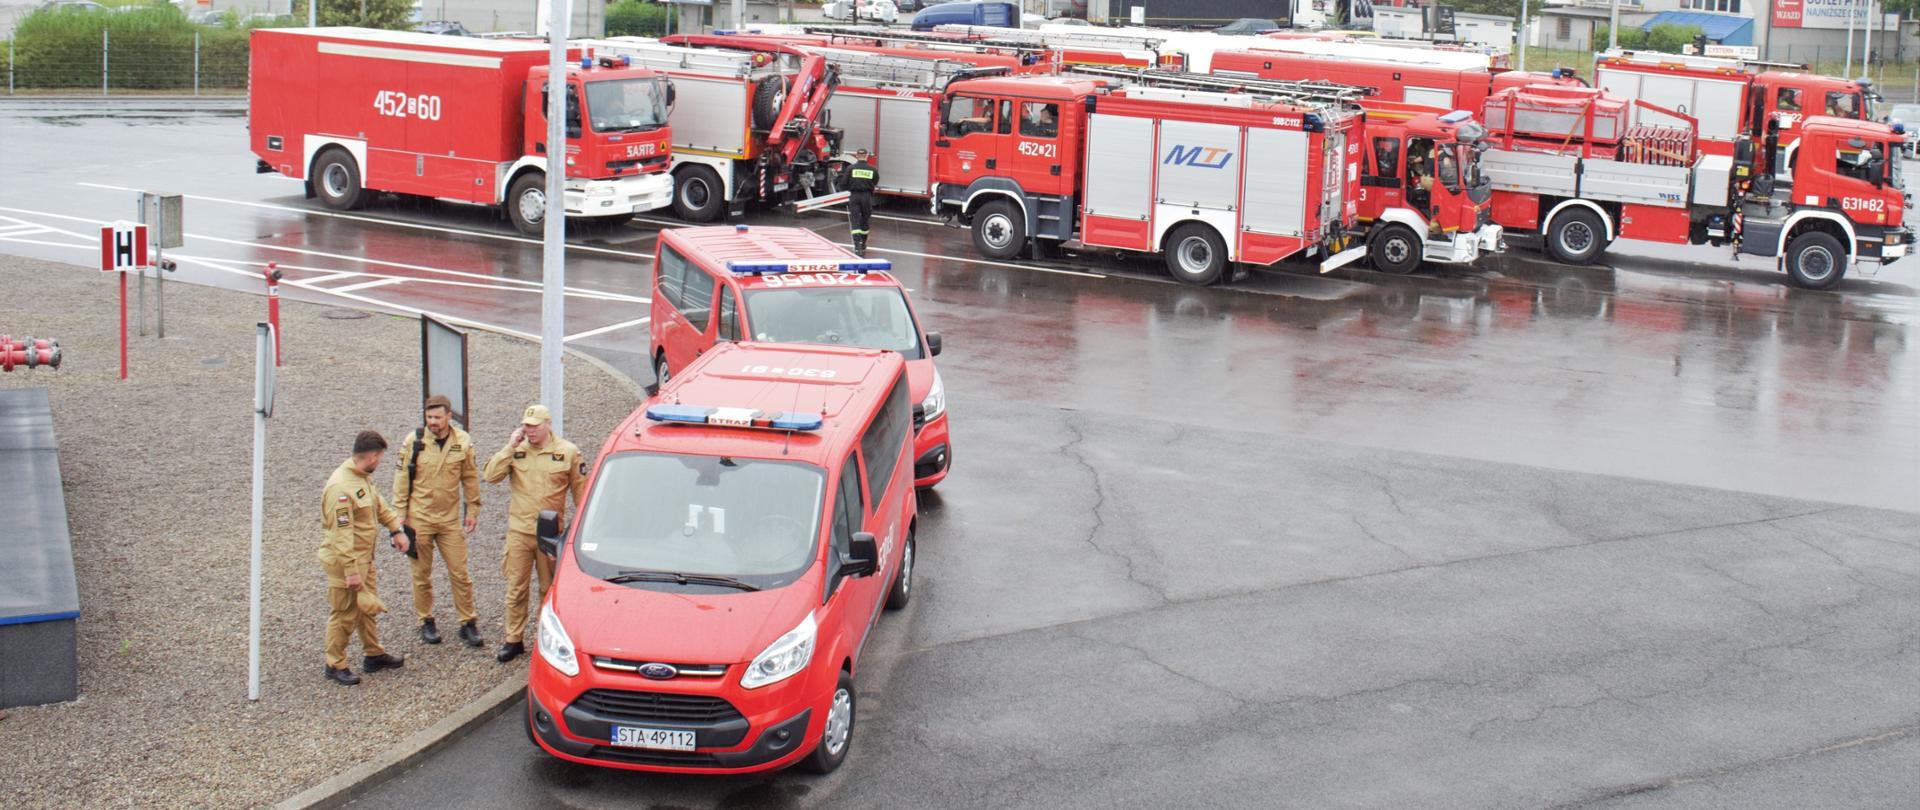 Na parkingu stoją czerwone samochody strażackie. Po lewej stronie zdjęcia obok czerwonego samochodu stoją trzej strażacy w mundurach w kolorze piaskowym.